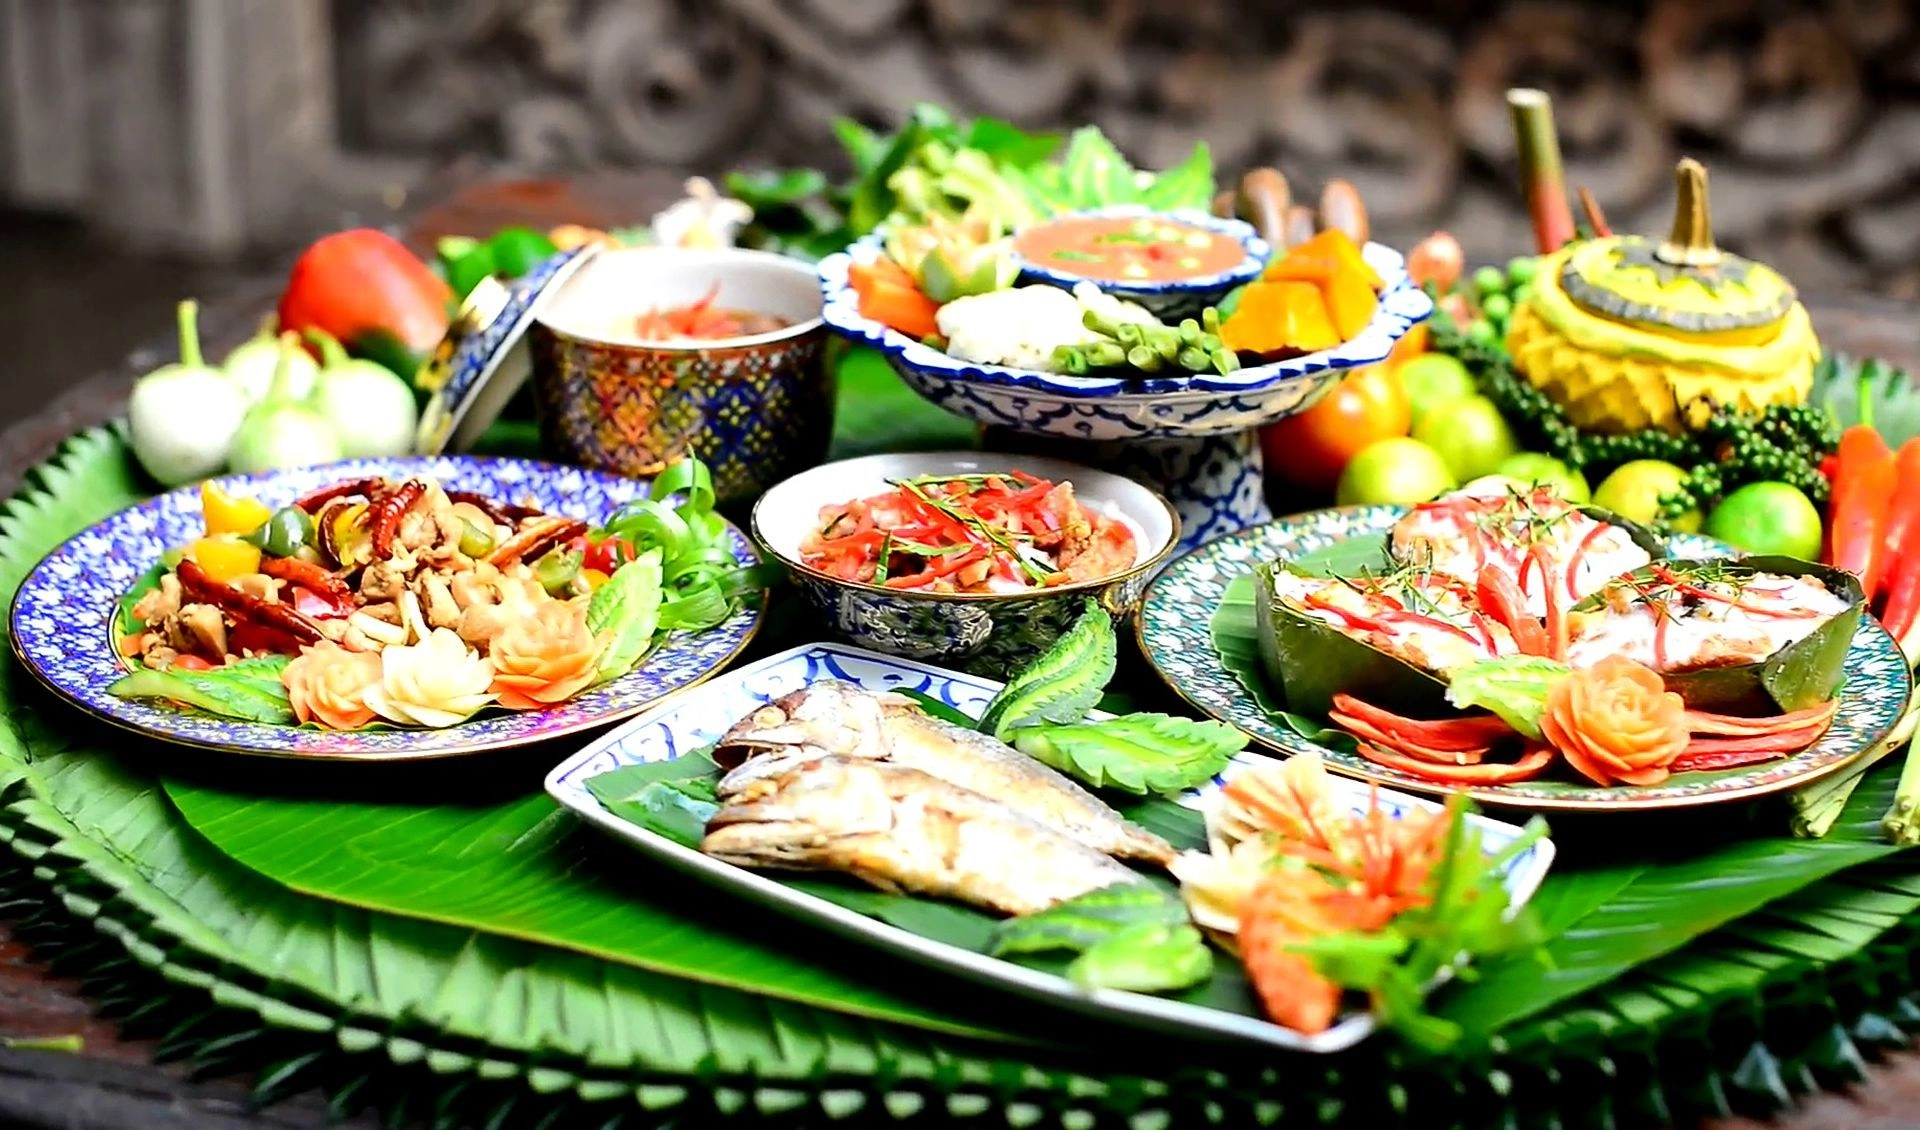 Какая еда популярна в Таиланде